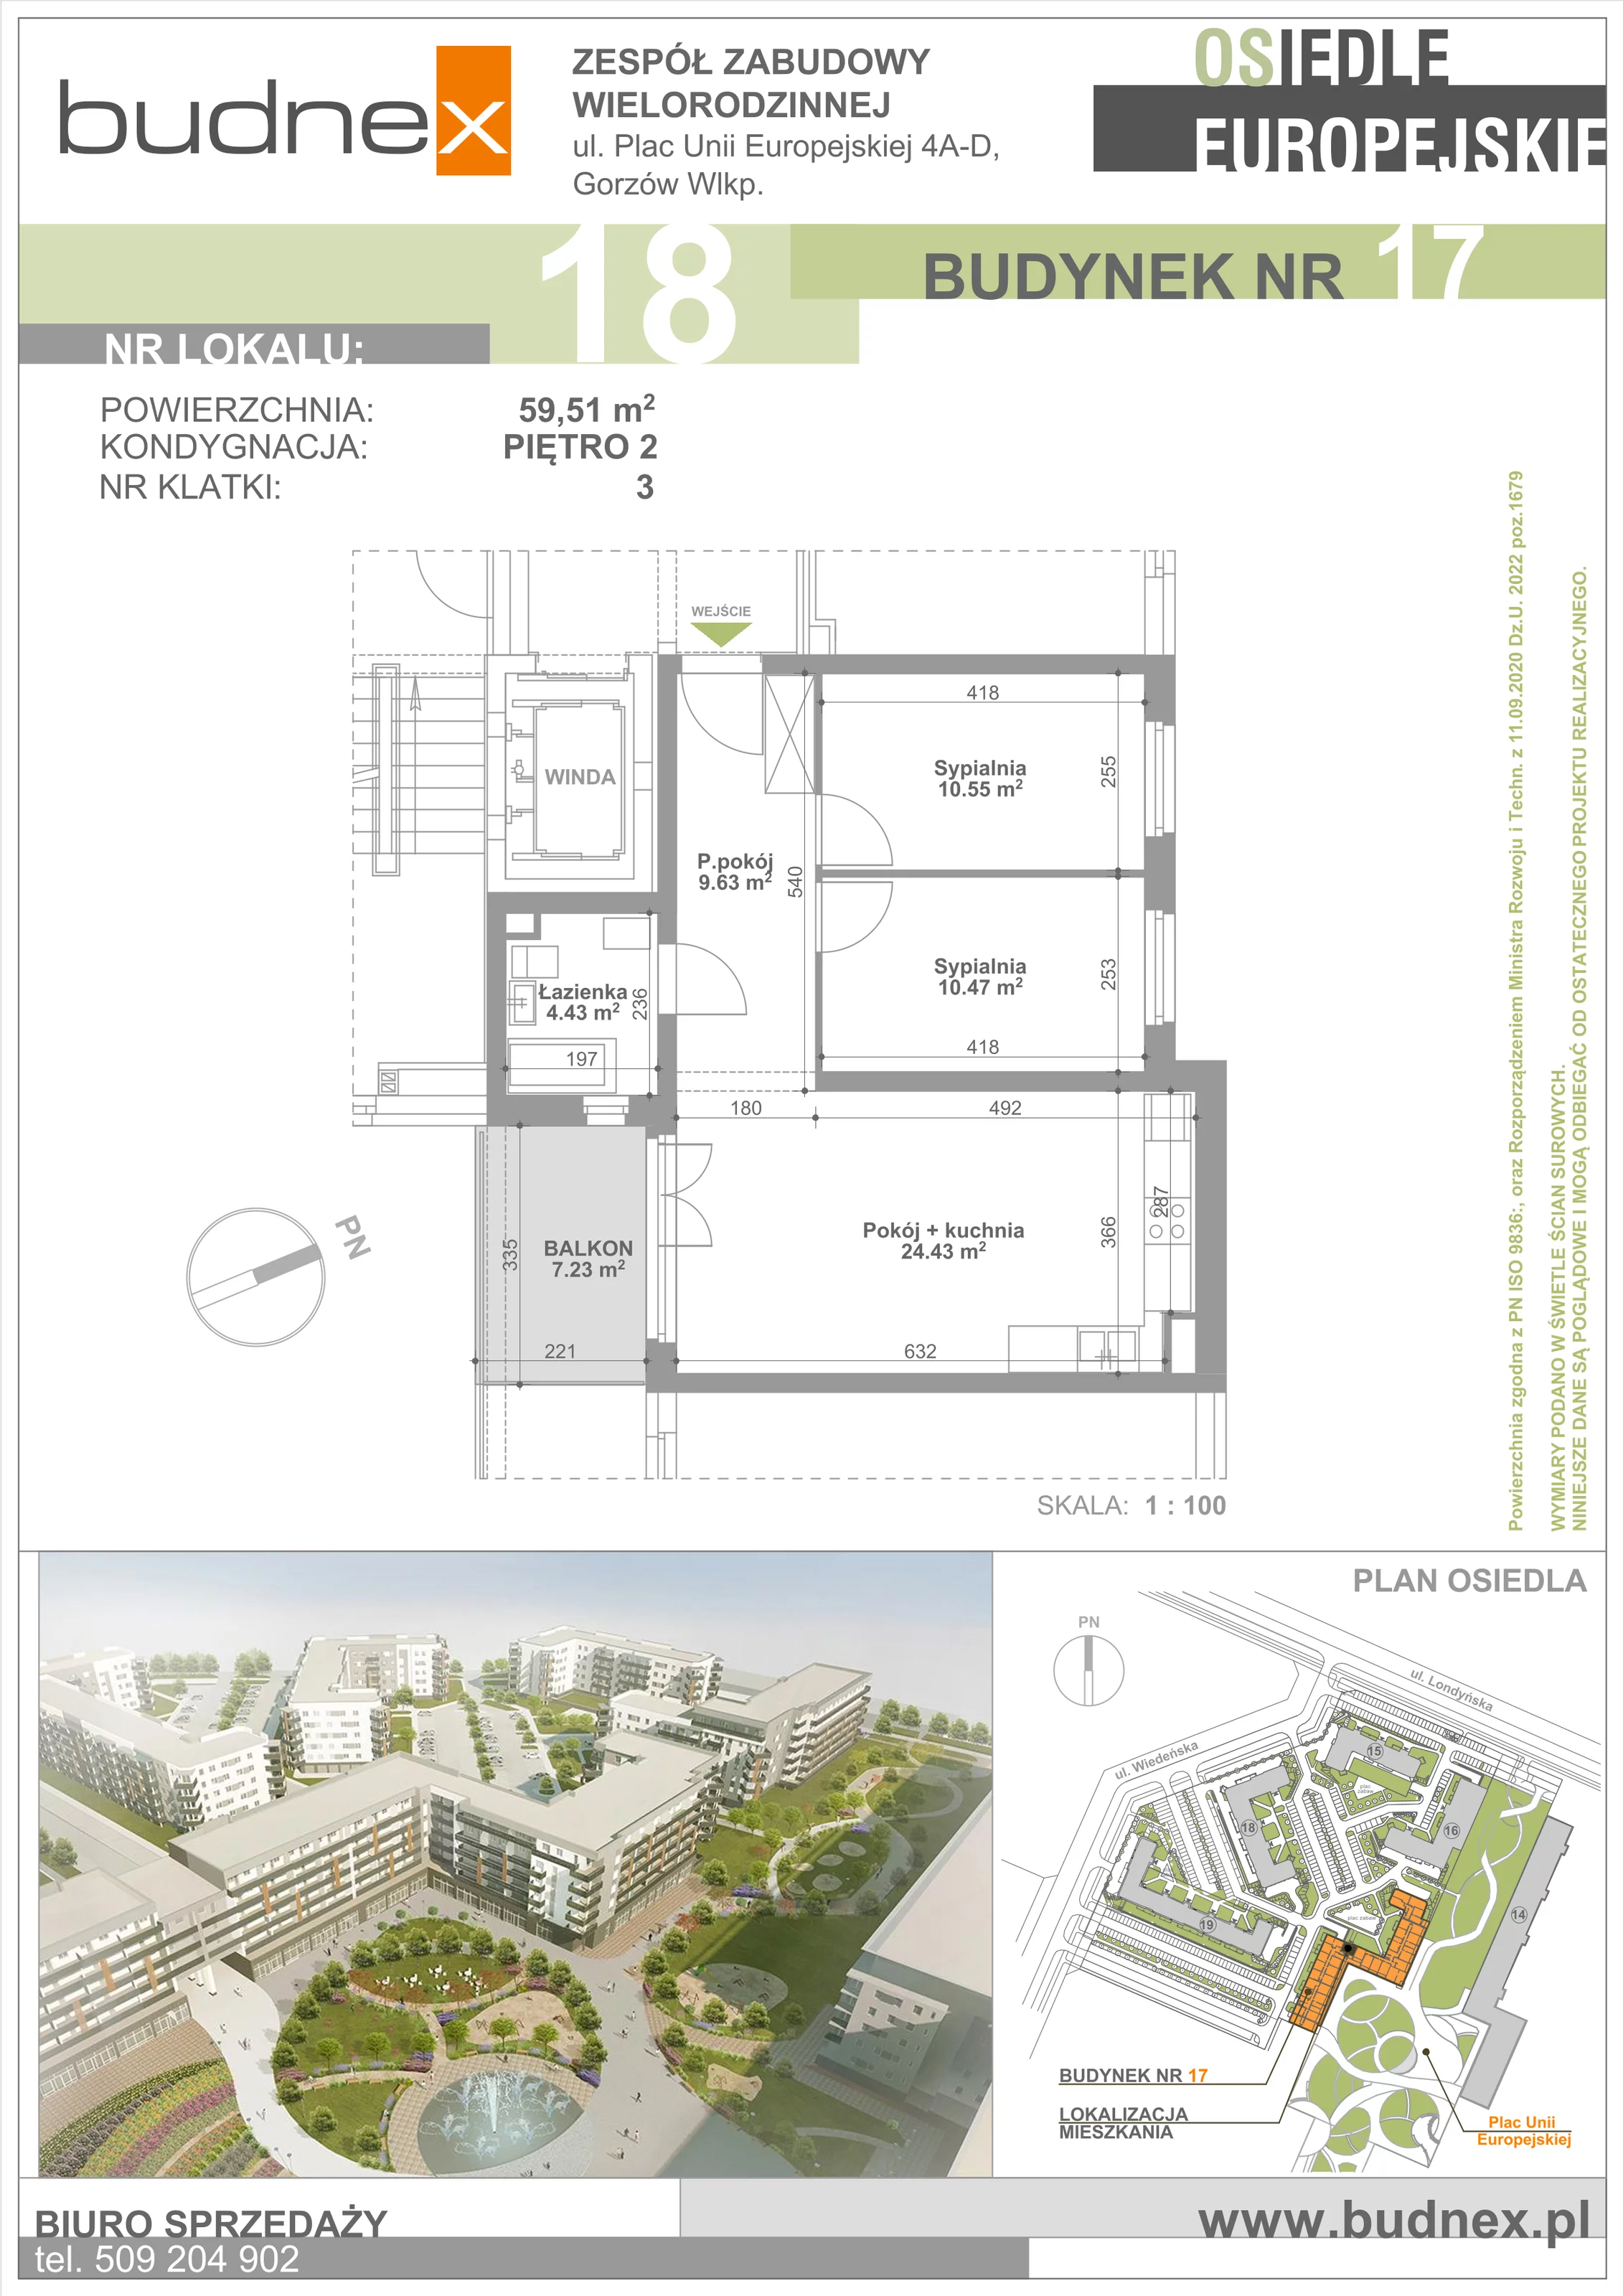 Mieszkanie 59,51 m², piętro 2, oferta nr 3/M18, Osiedle Europejskie - Budynek 17, Gorzów Wielkopolski, Plac Unii Europejskiej 4A-D